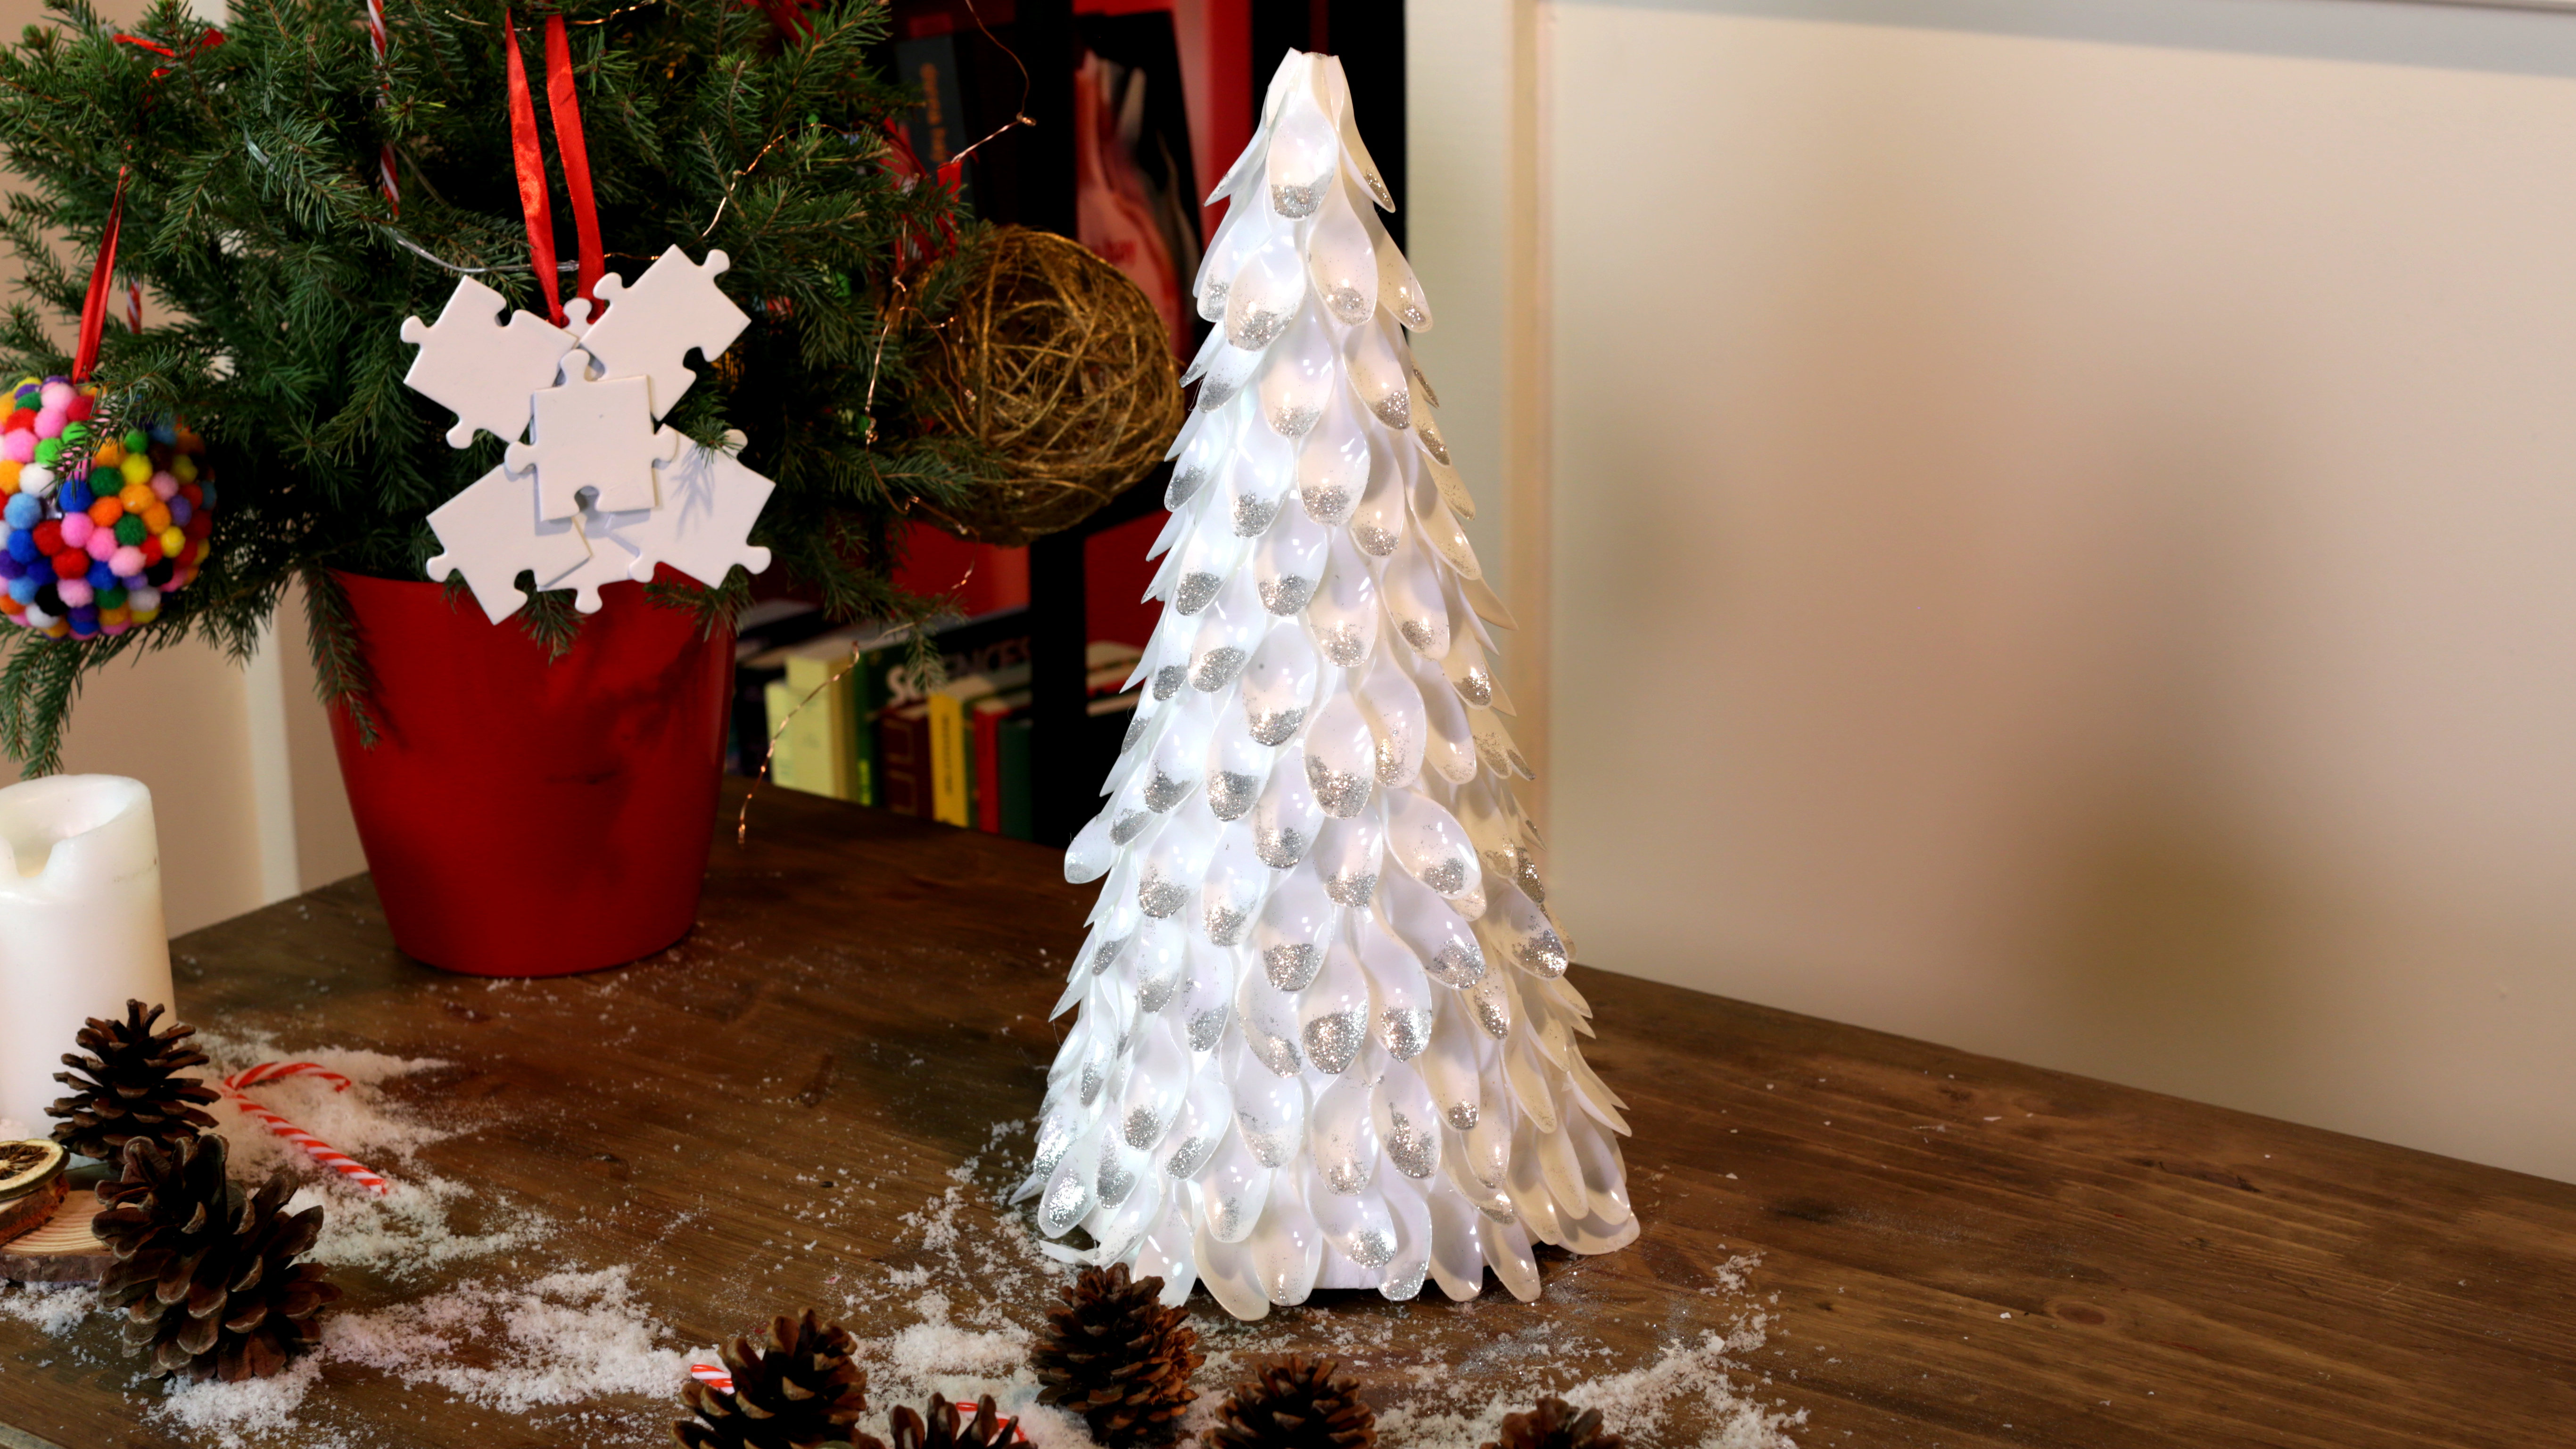 Recicle suas garrafas de plástico para criar decorações de Natal.